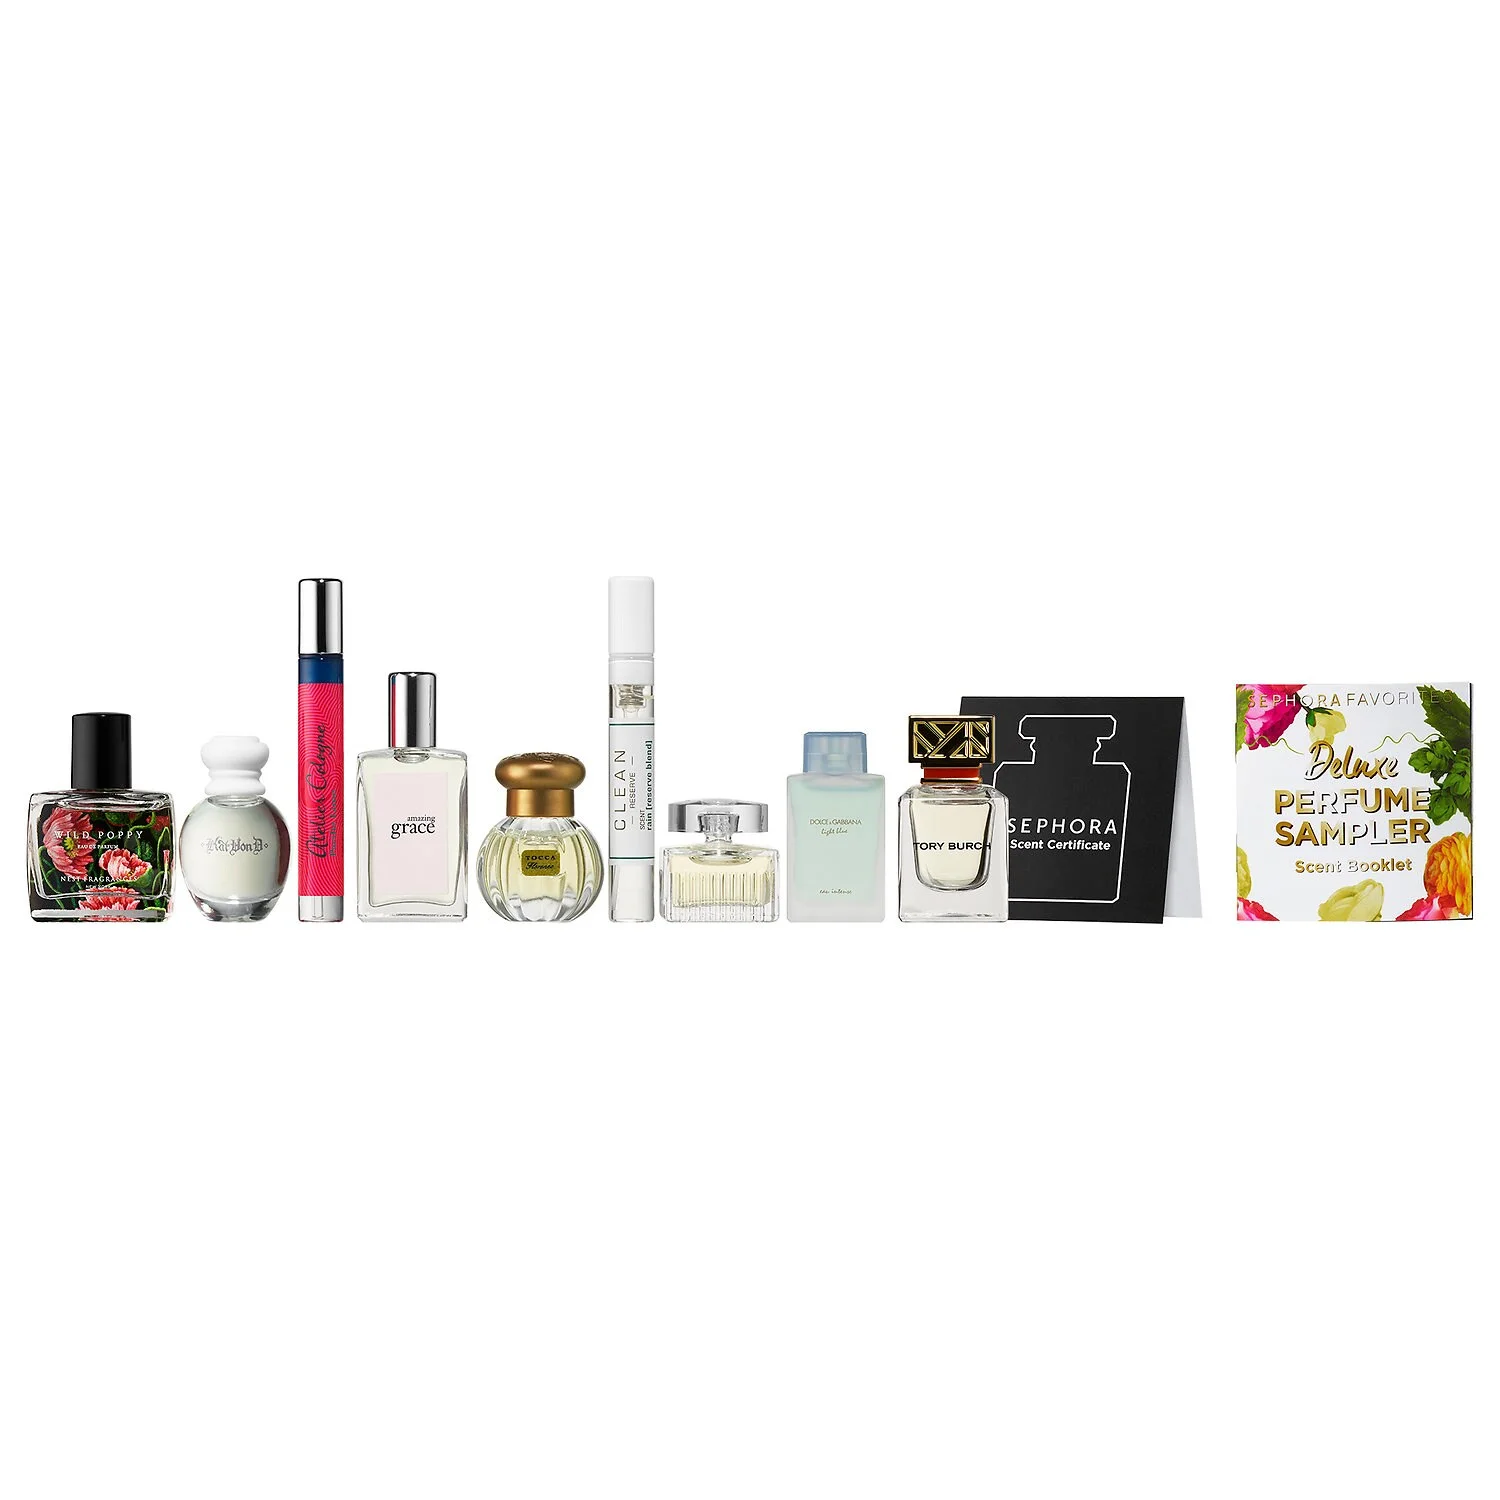 Sephora Favorites Perfume Sampler Set